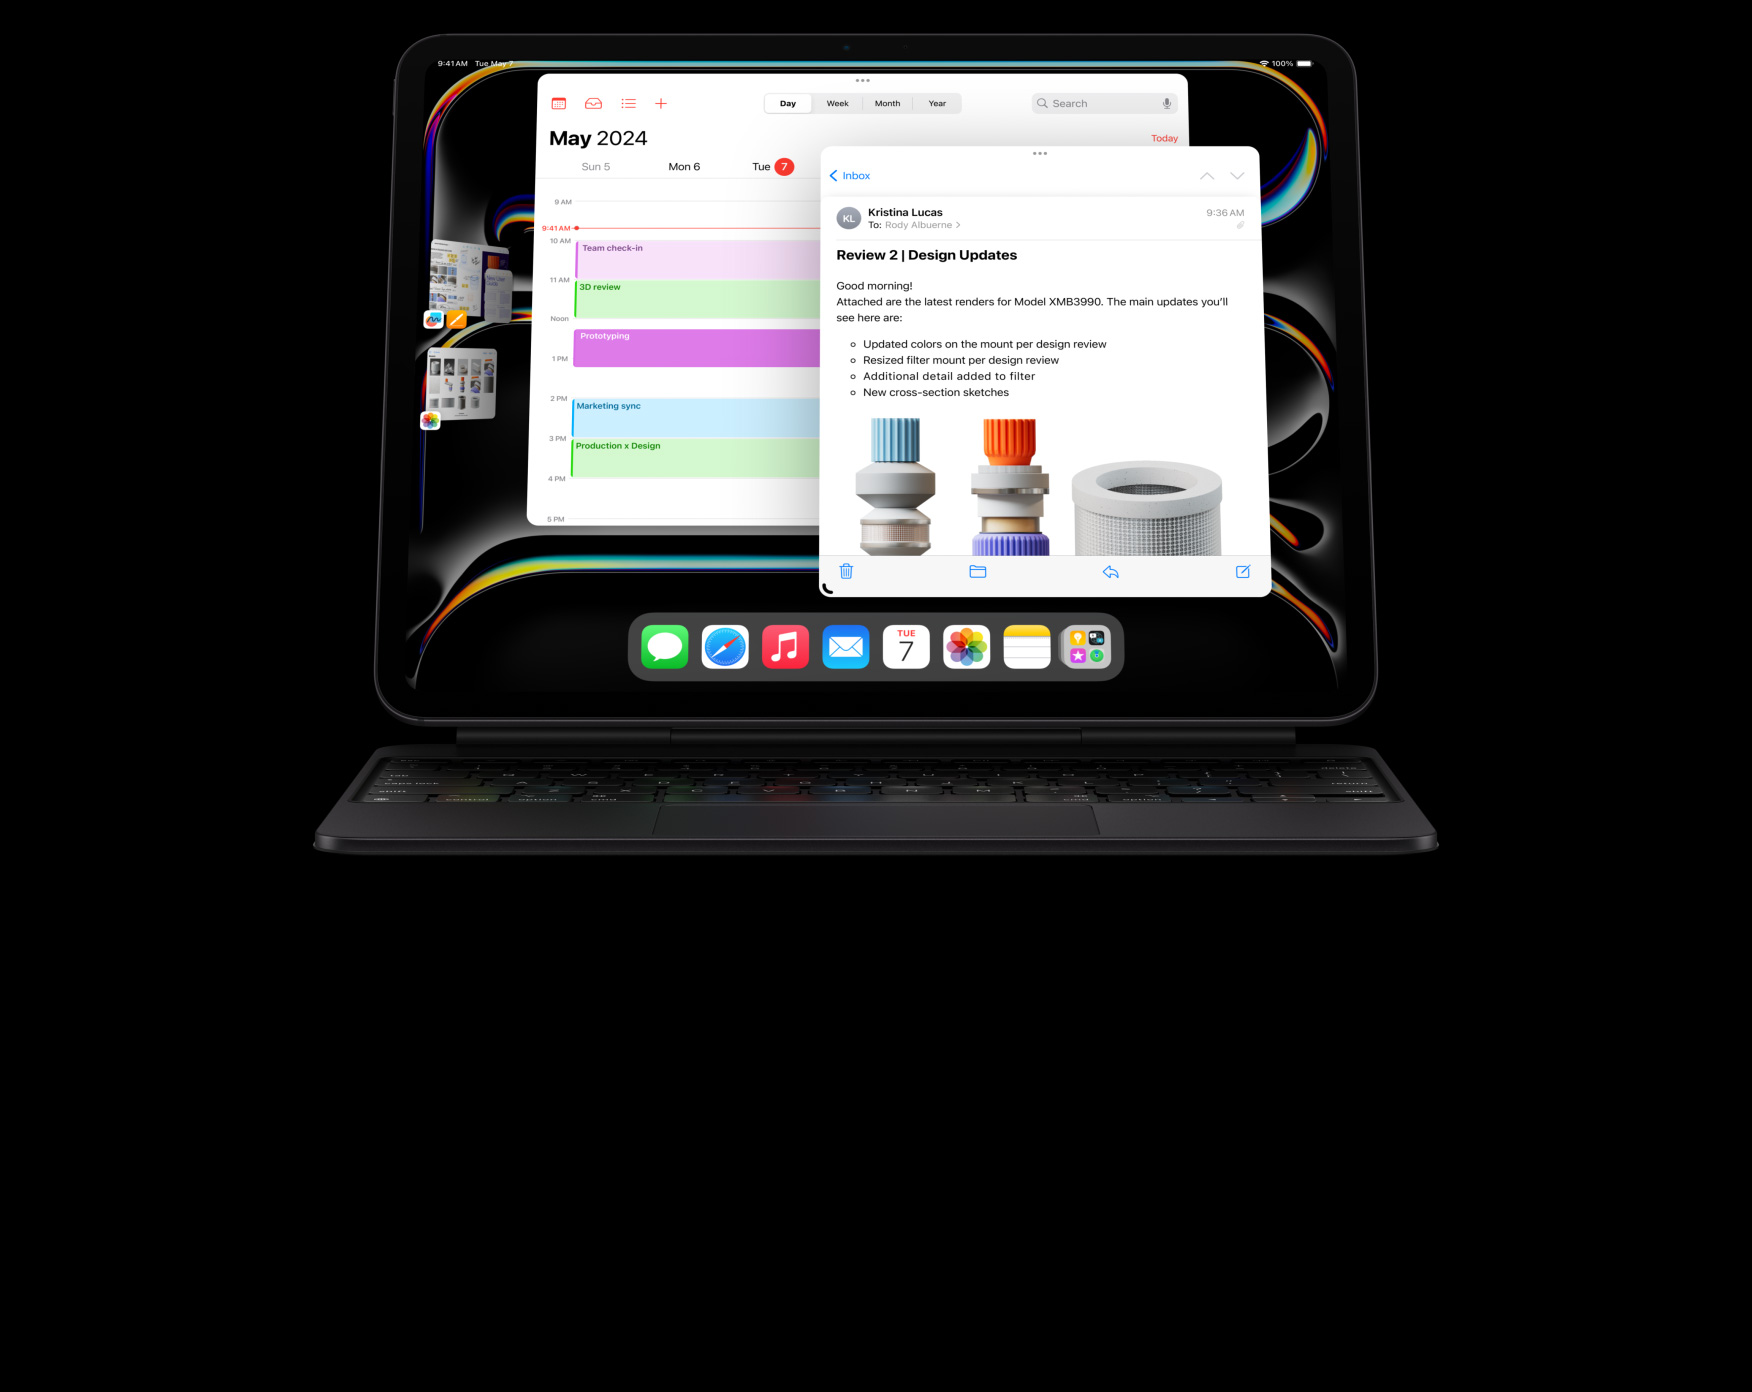 Ein iPad Pro ist im Querformat am Magic Keyboard befestigt, auf dem Multitasking mit mehreren offenen Apps gezeigt wird